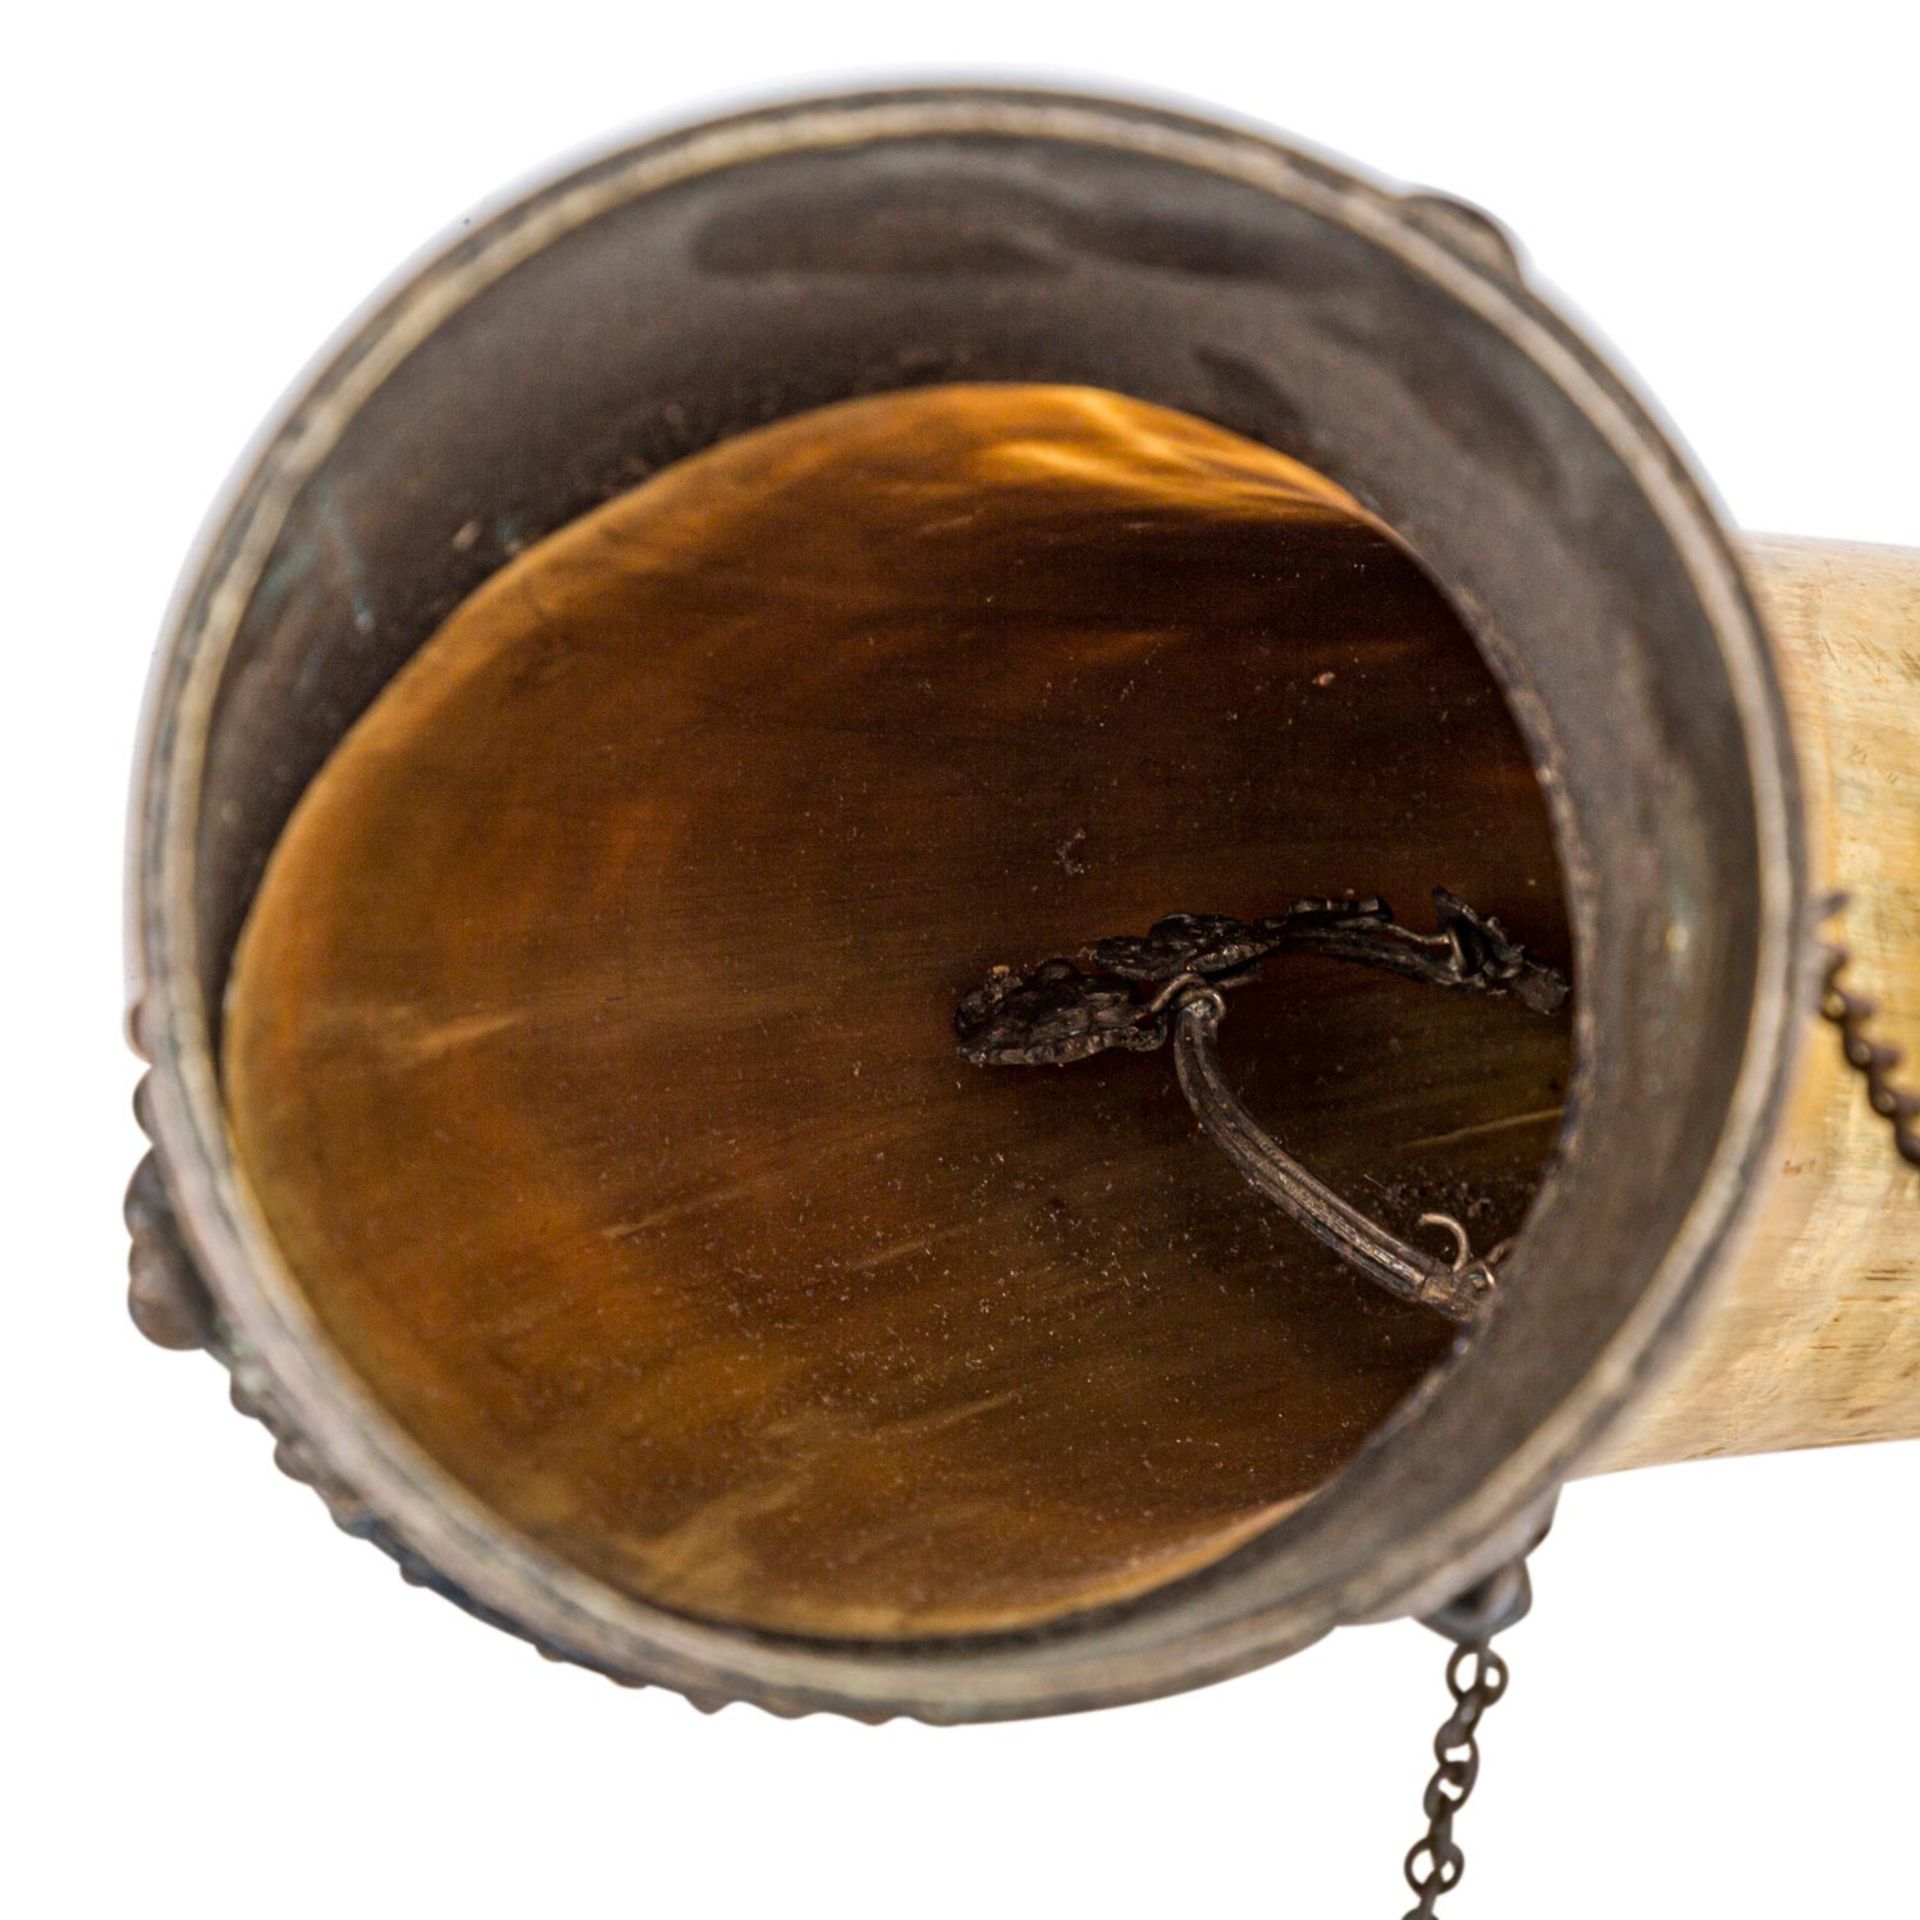 Großes Trinkhorn der Burschenschaft Ghibellinia,Ende 19. Jh., Büffelhorn mit Metallmontierung, diese - Bild 3 aus 4